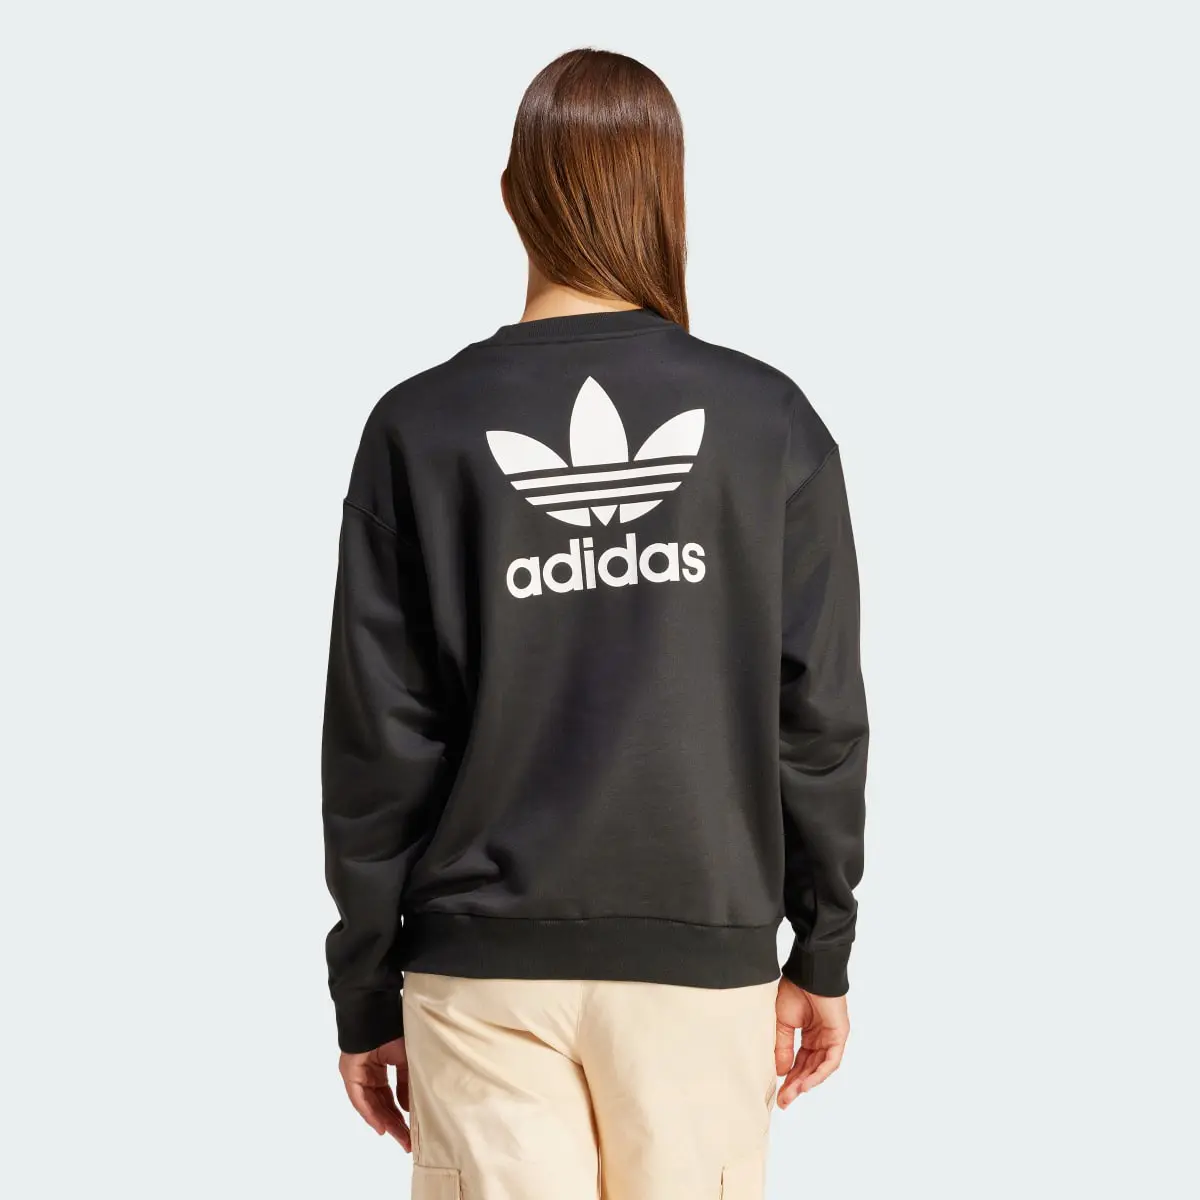 Adidas Trefoil Loose Sweatshirt. 3